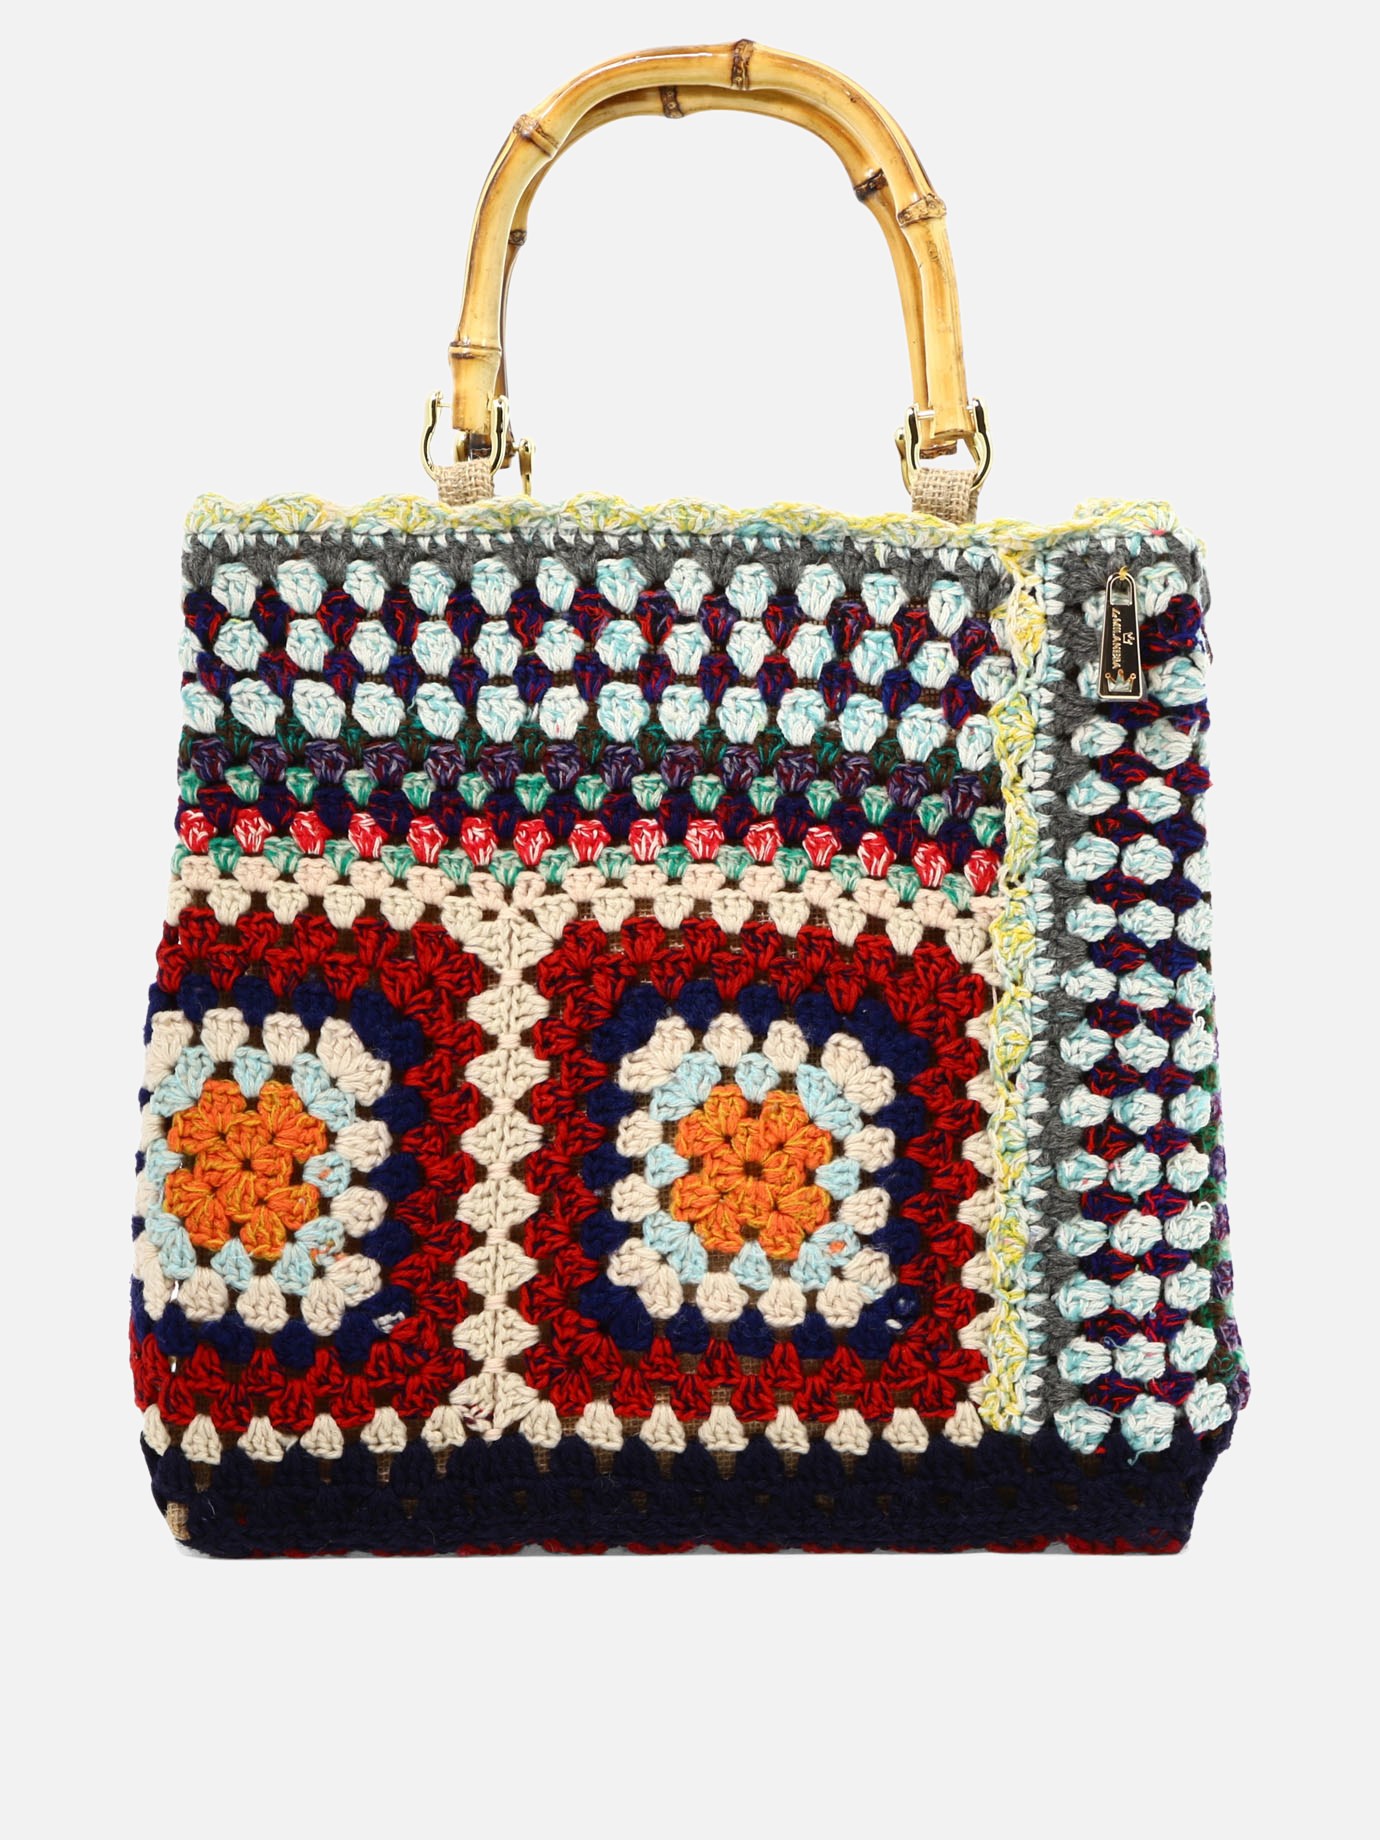  Crochet  handbagby La Milanesa - 5